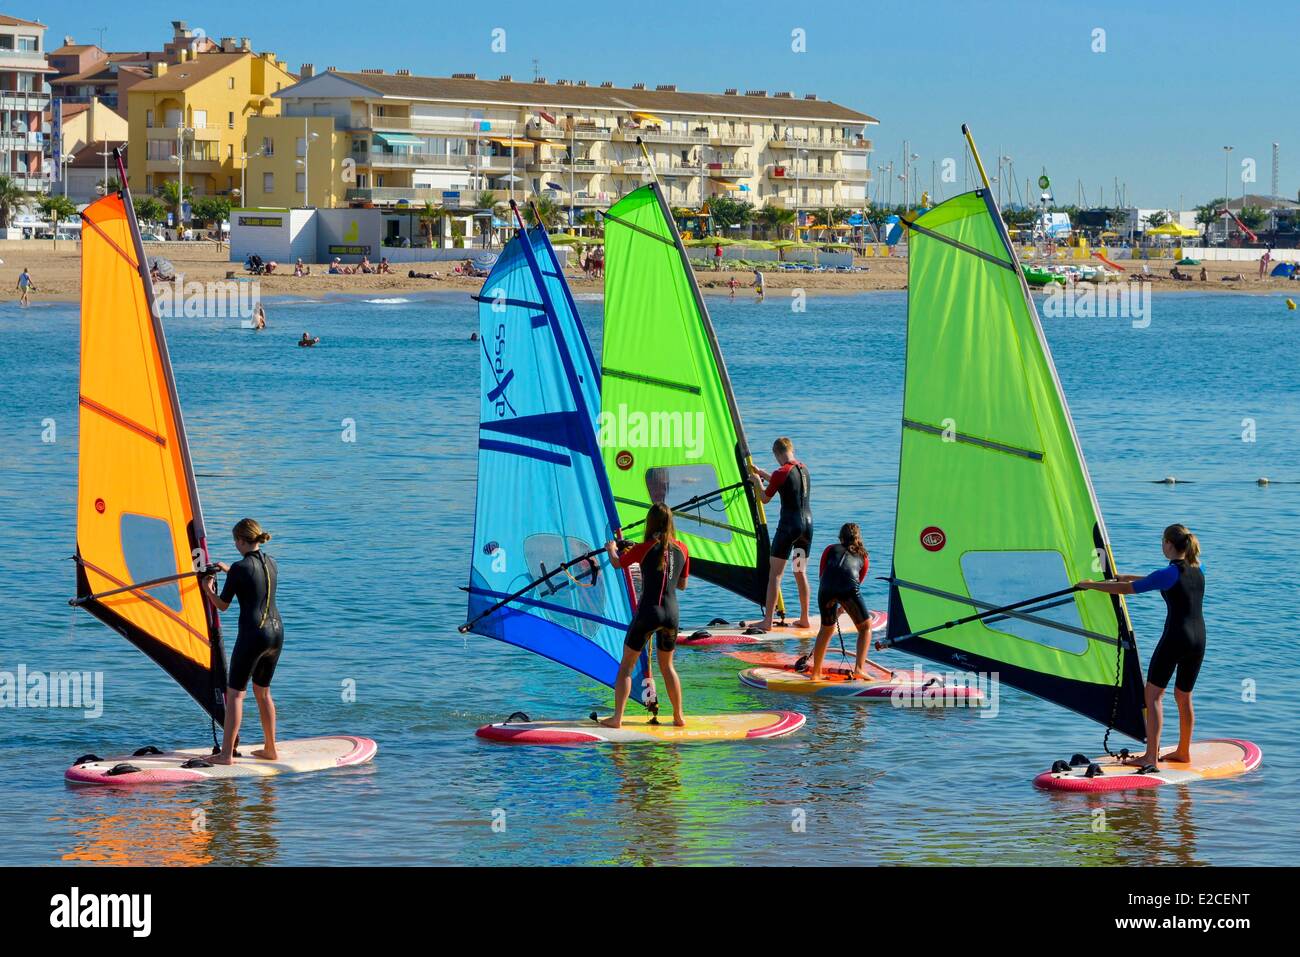 Francia, Herault, Valras Plage, apprendistato della tavola da windsurf e la costa di sfondo Foto Stock